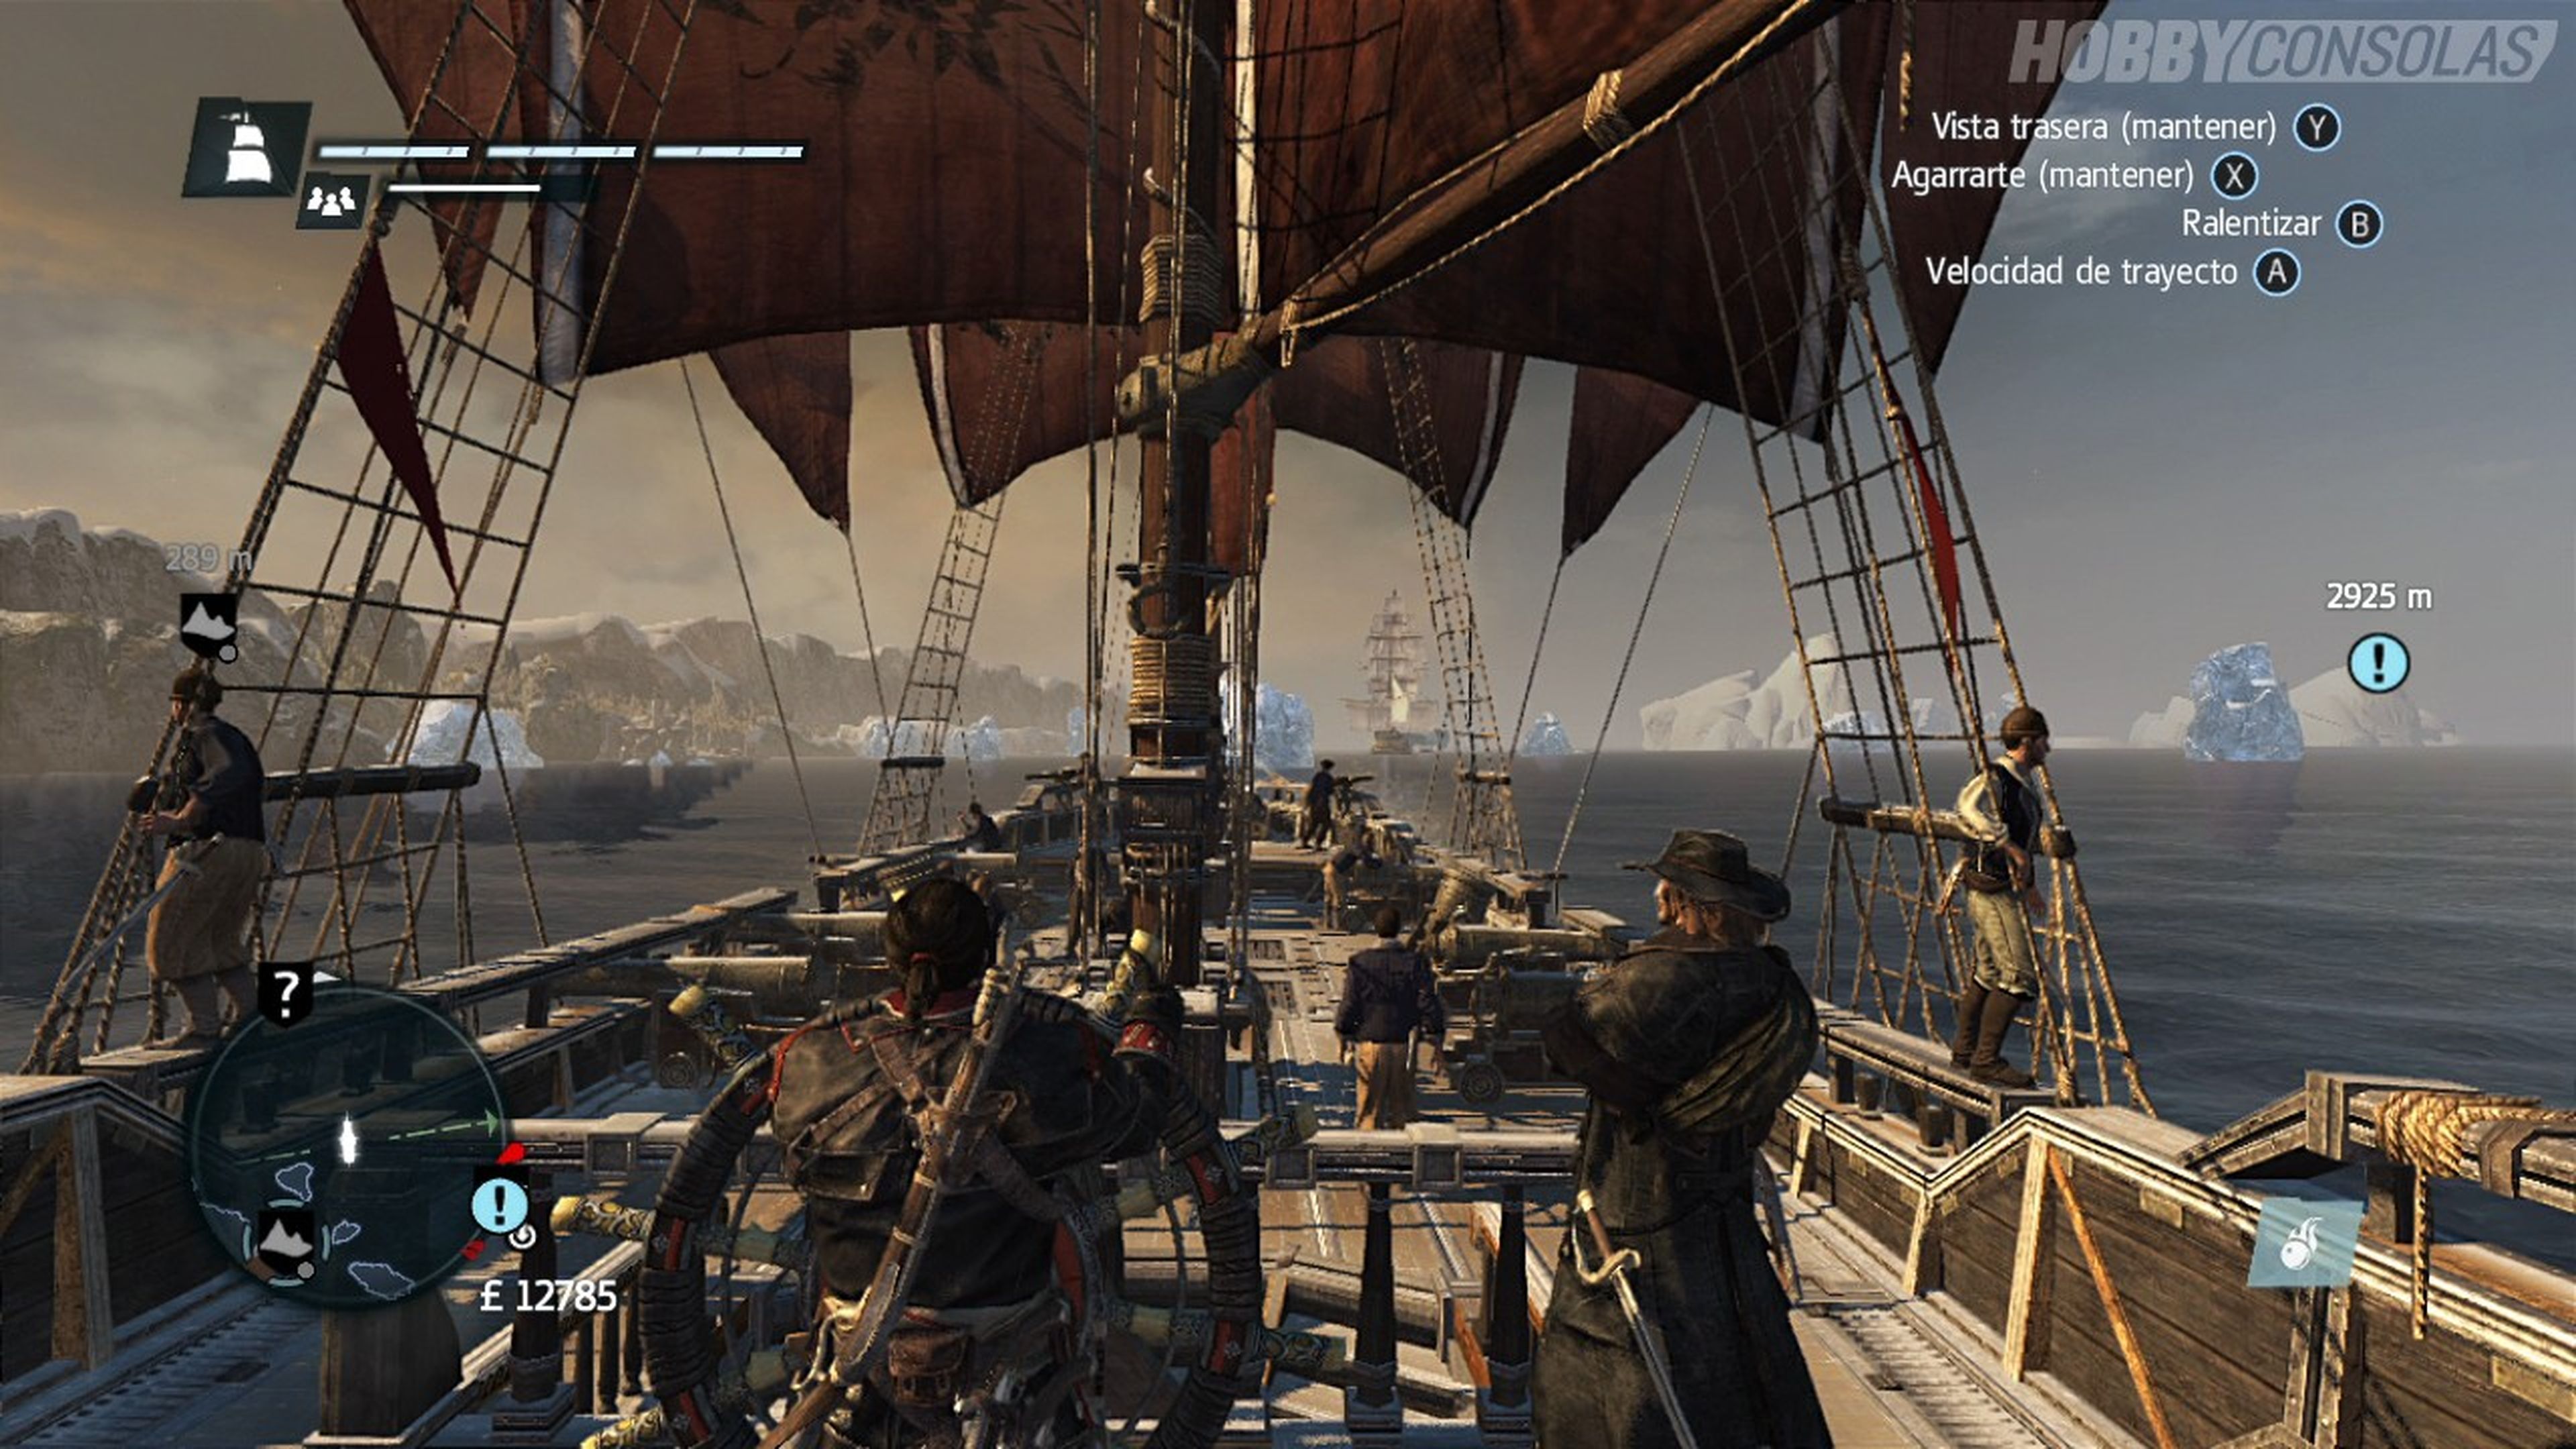 Análisis de Assassin's Creed Rogue para PS3 y 360